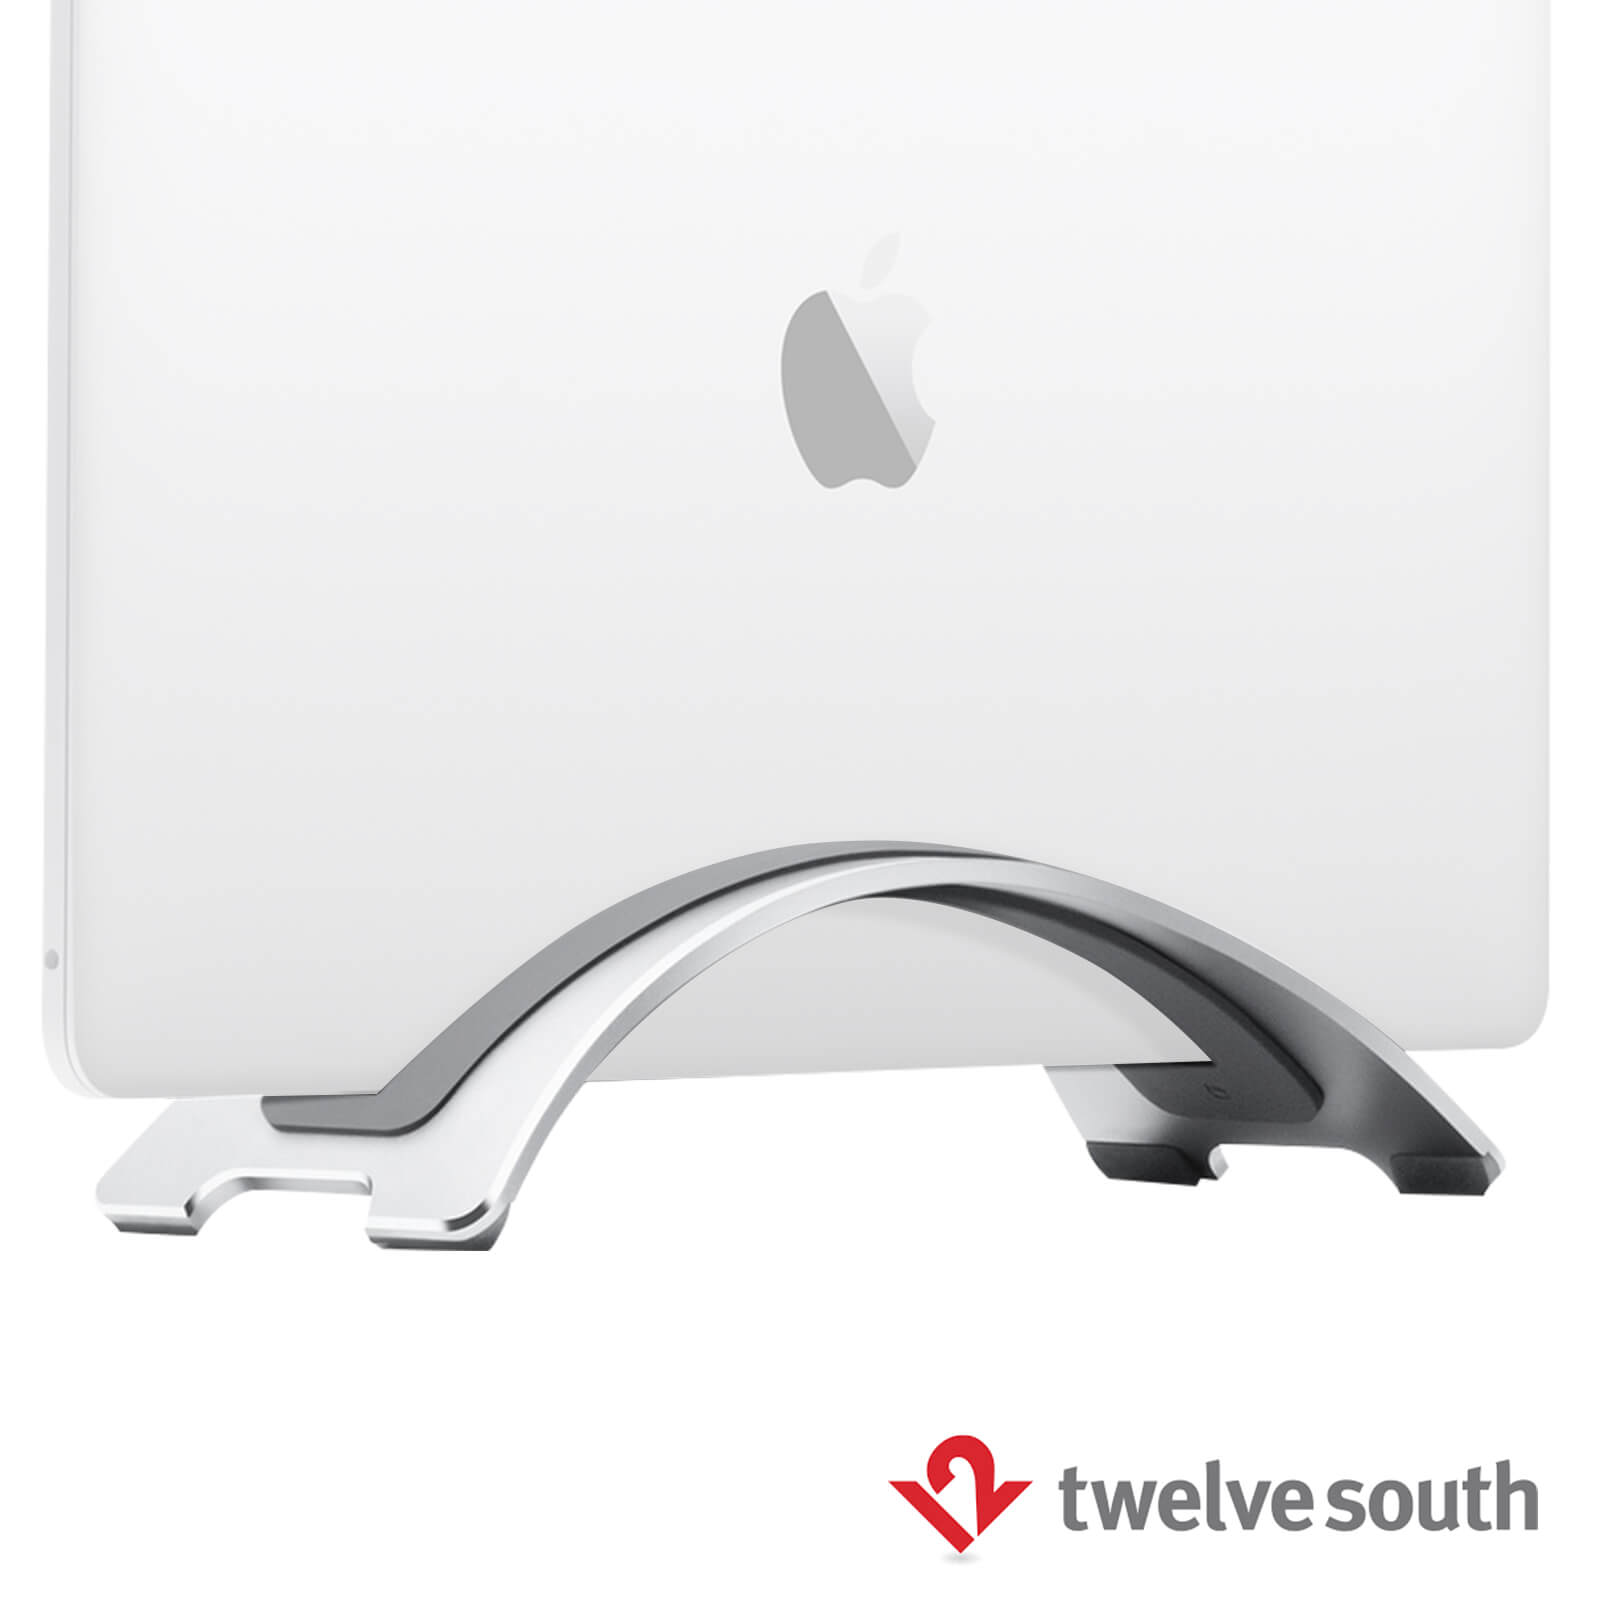 Support BookArc de Twelve South pour MacBook - Gris sidéral